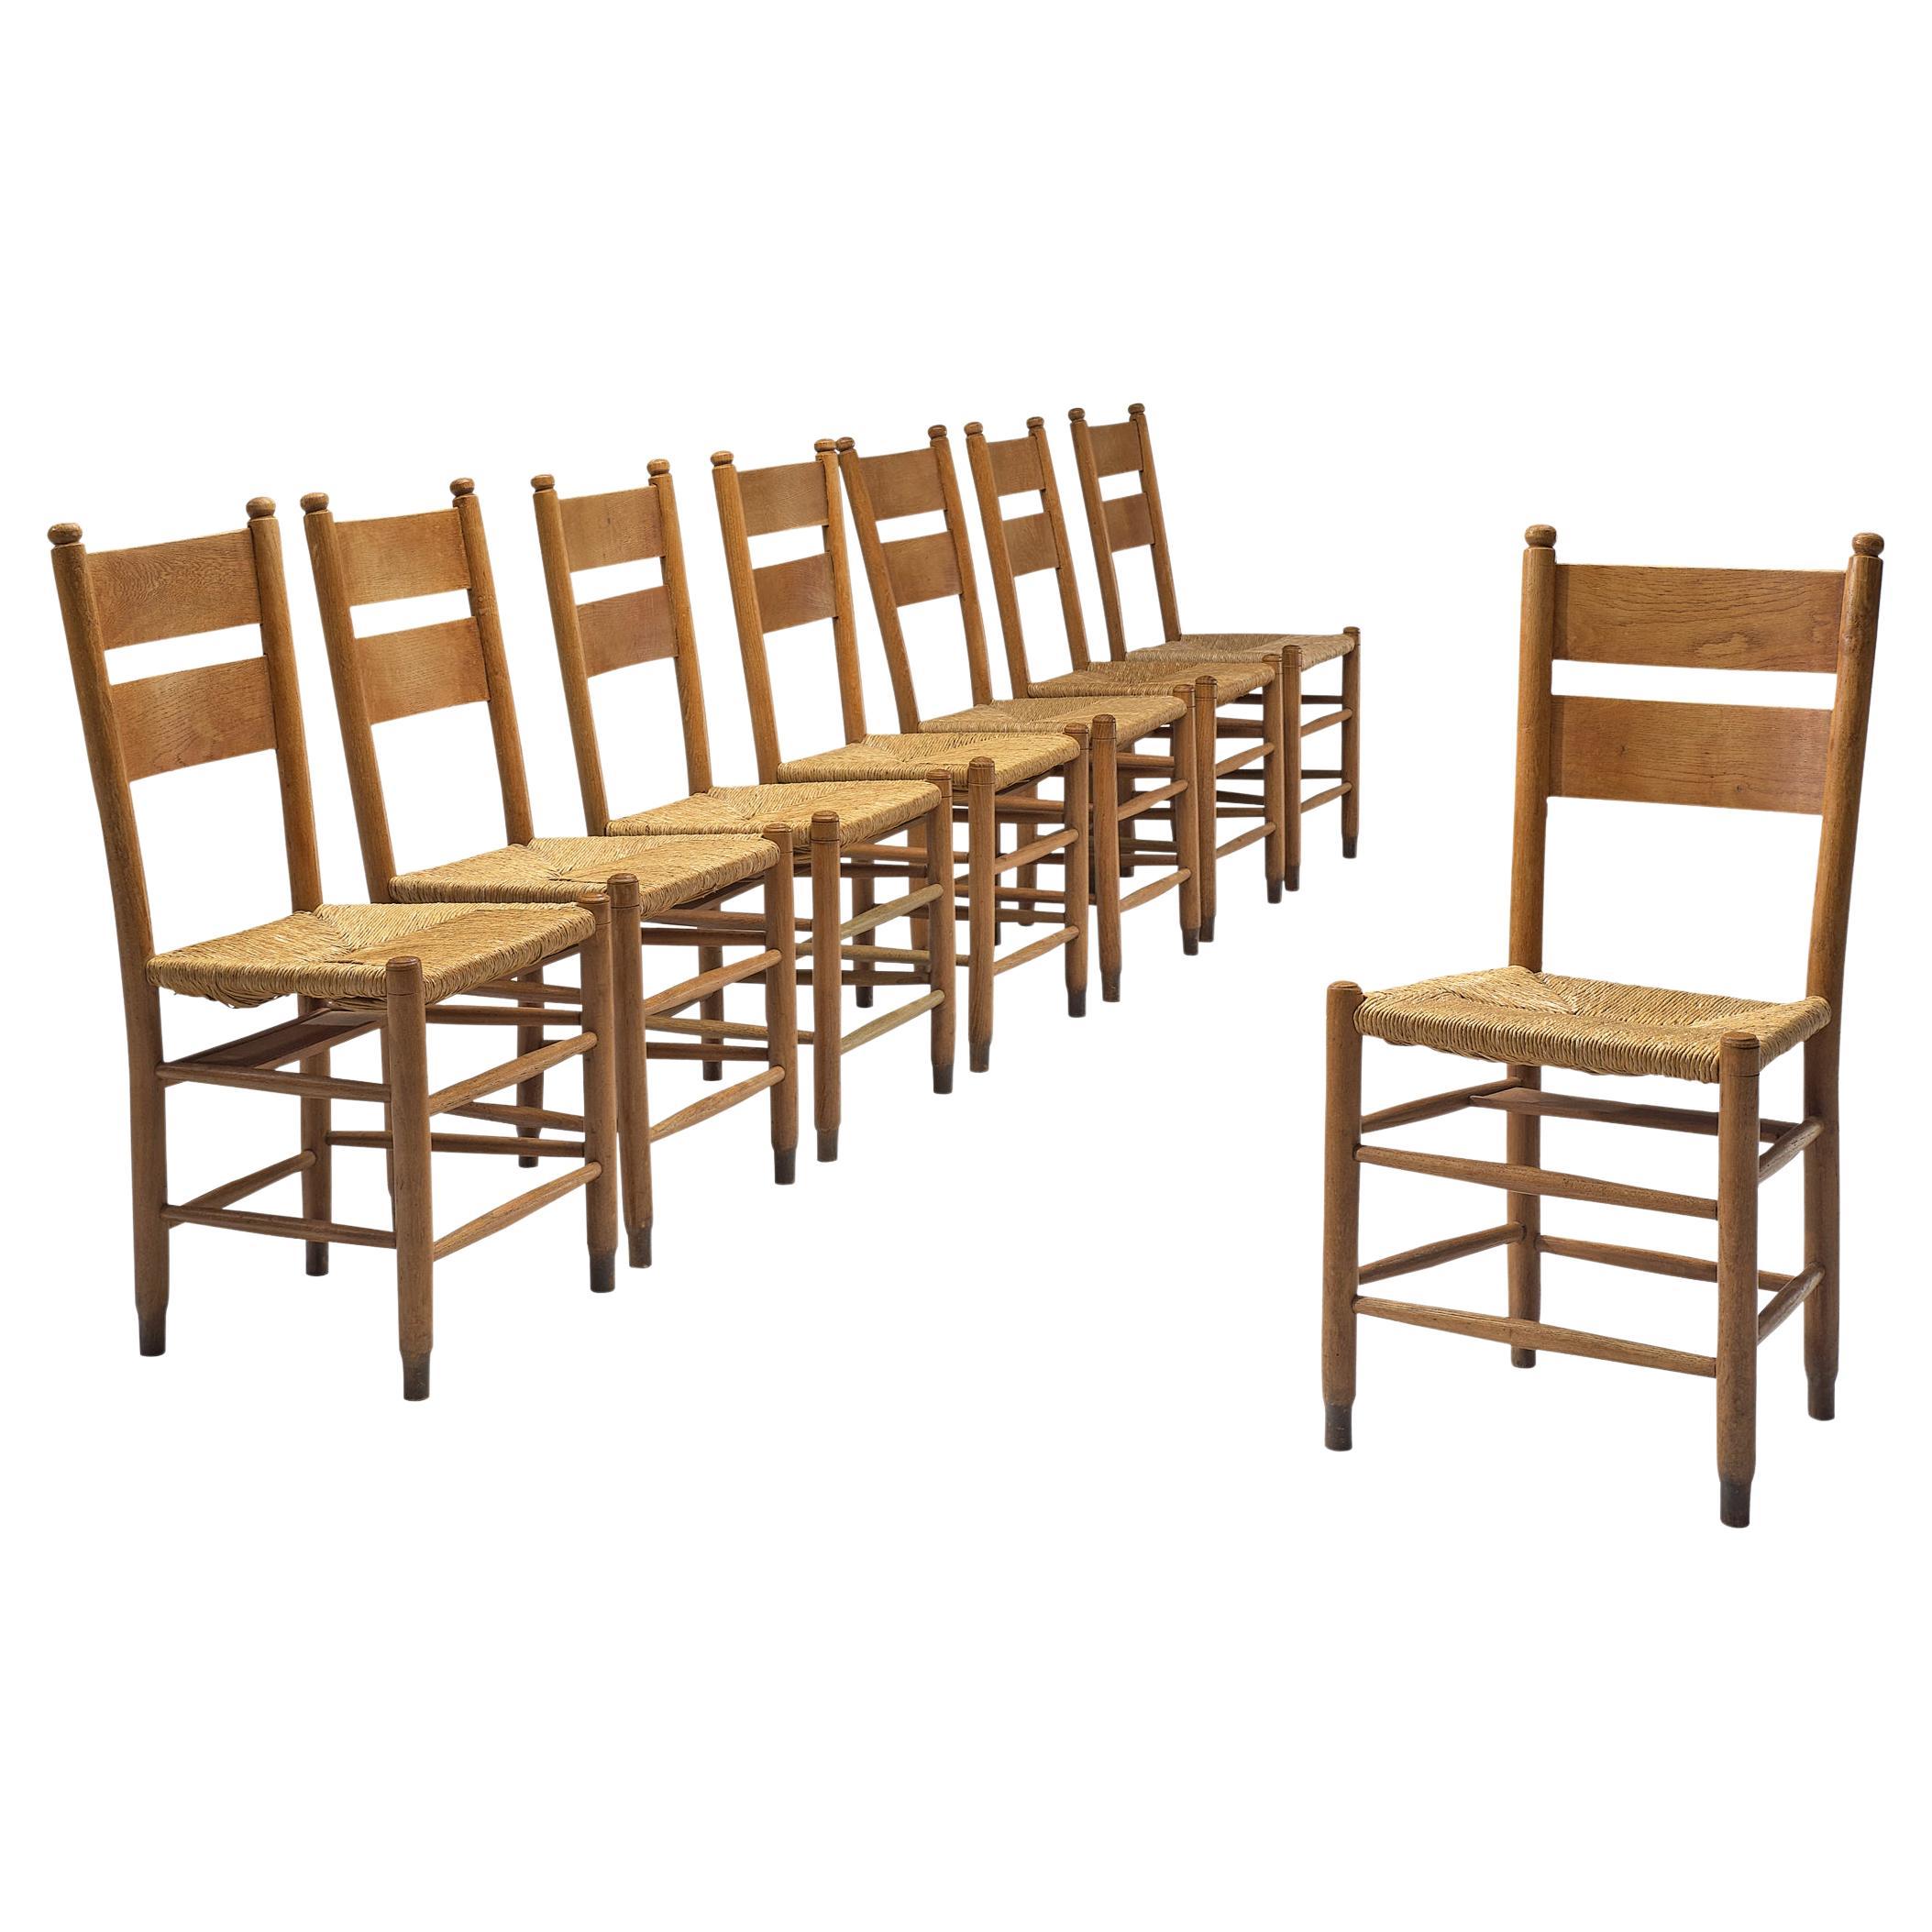 Rustikale dänische Stühle aus Stroh und Eiche